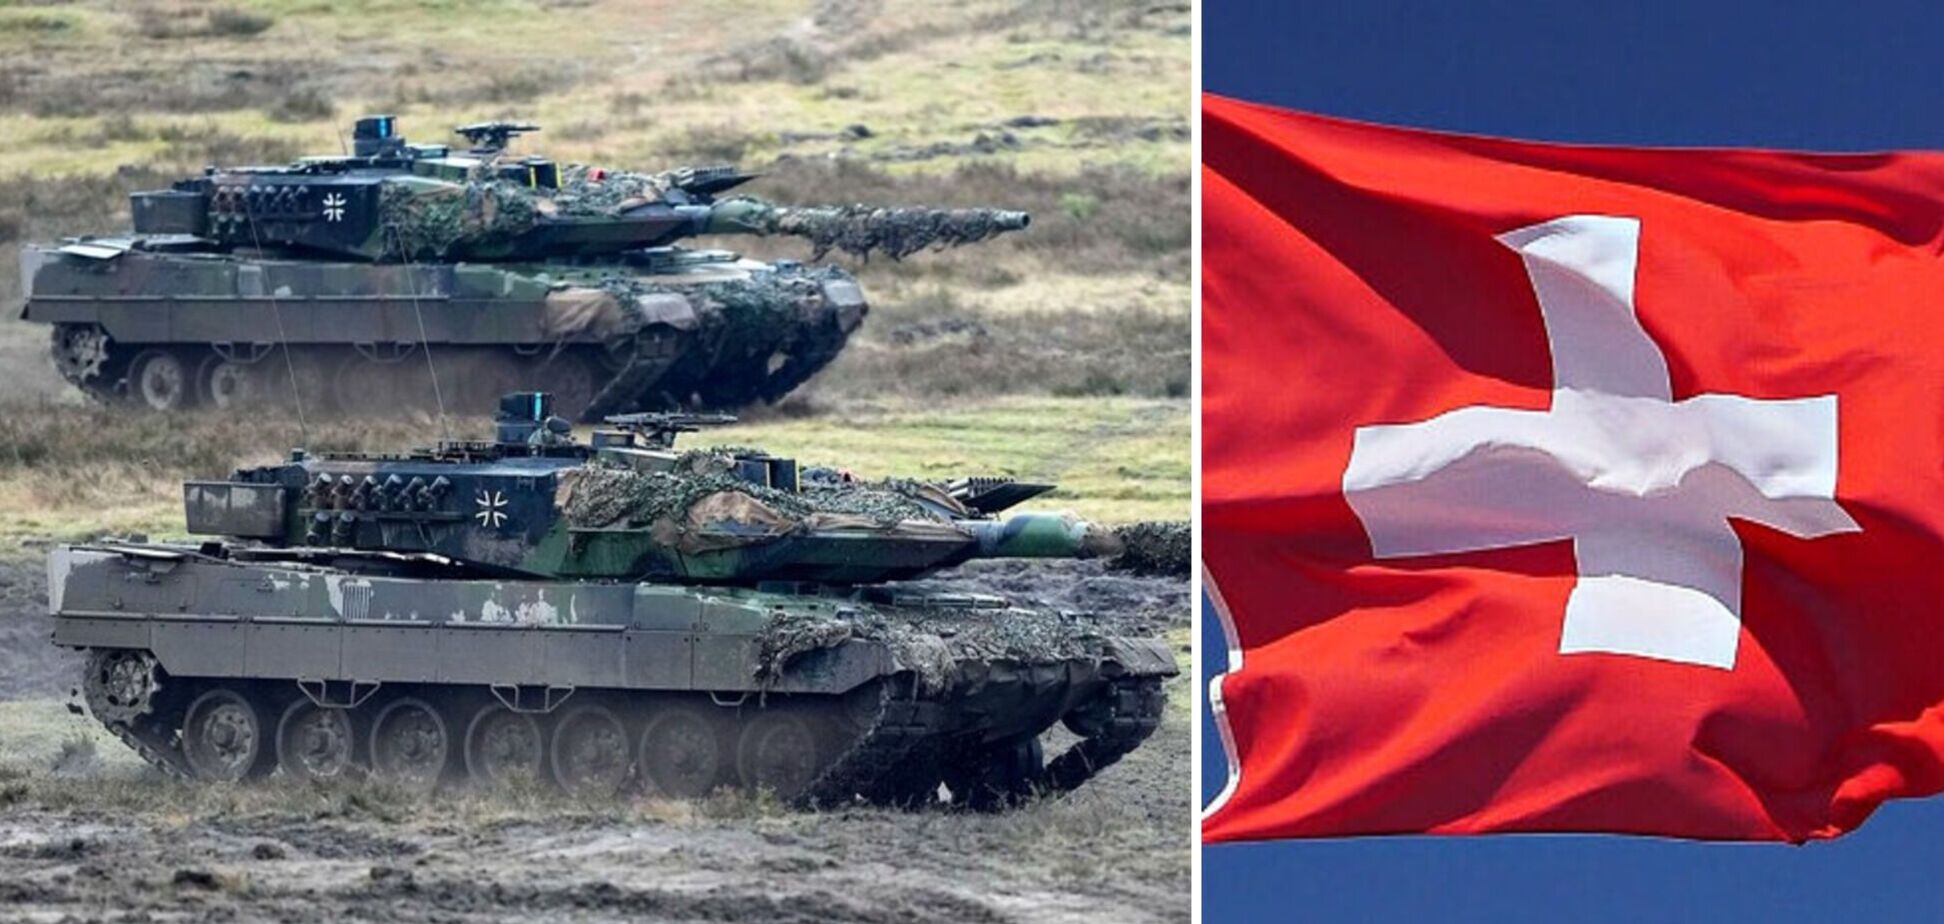 Правительство Швейцарии согласилось списать 25 танков Leopard 2 для последующей перепродажи: может ли их получить Украина